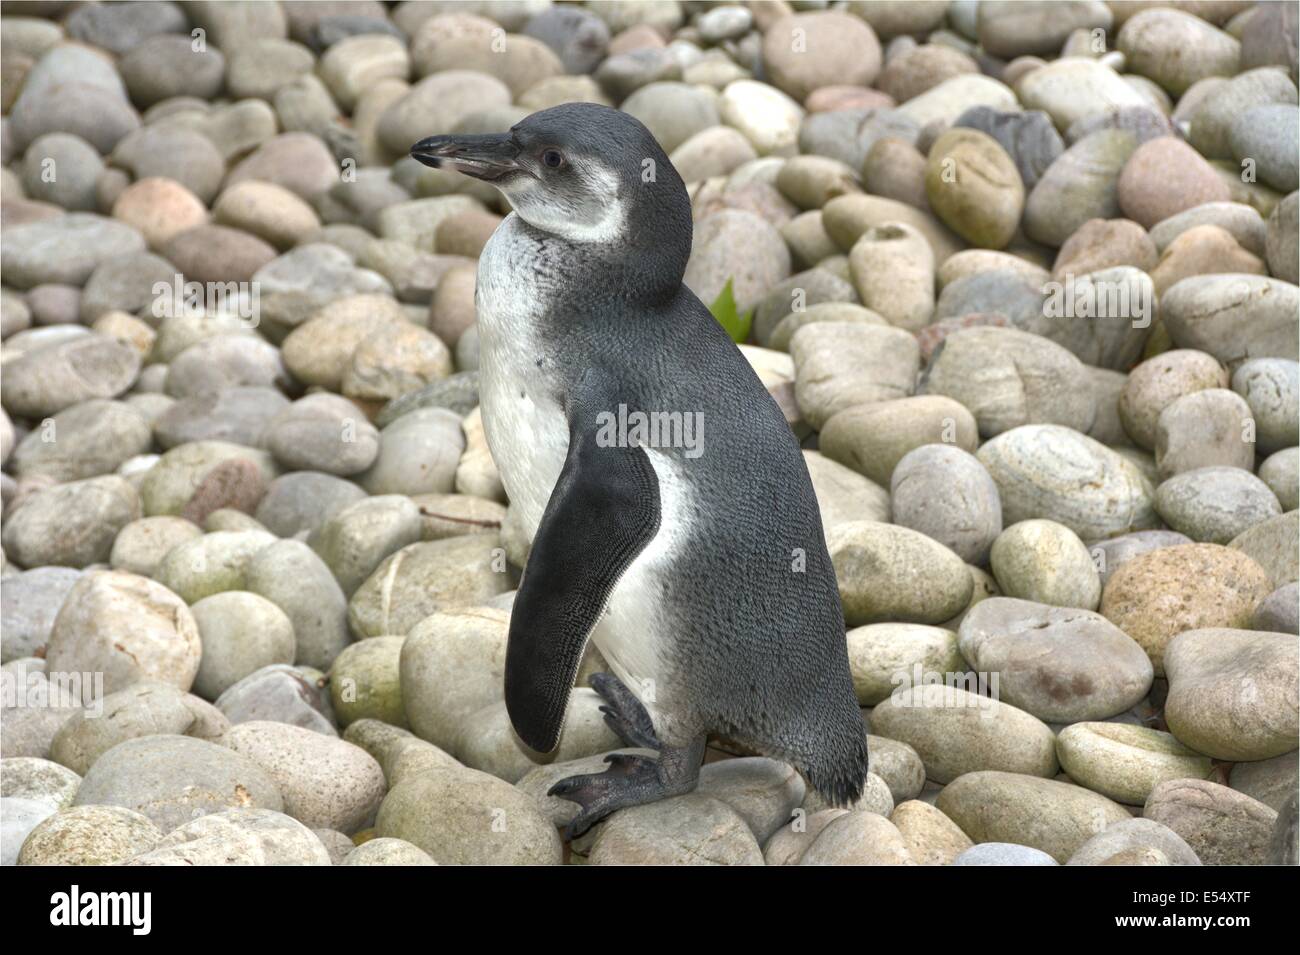 Penguin left side standing on stones. Stock Photo